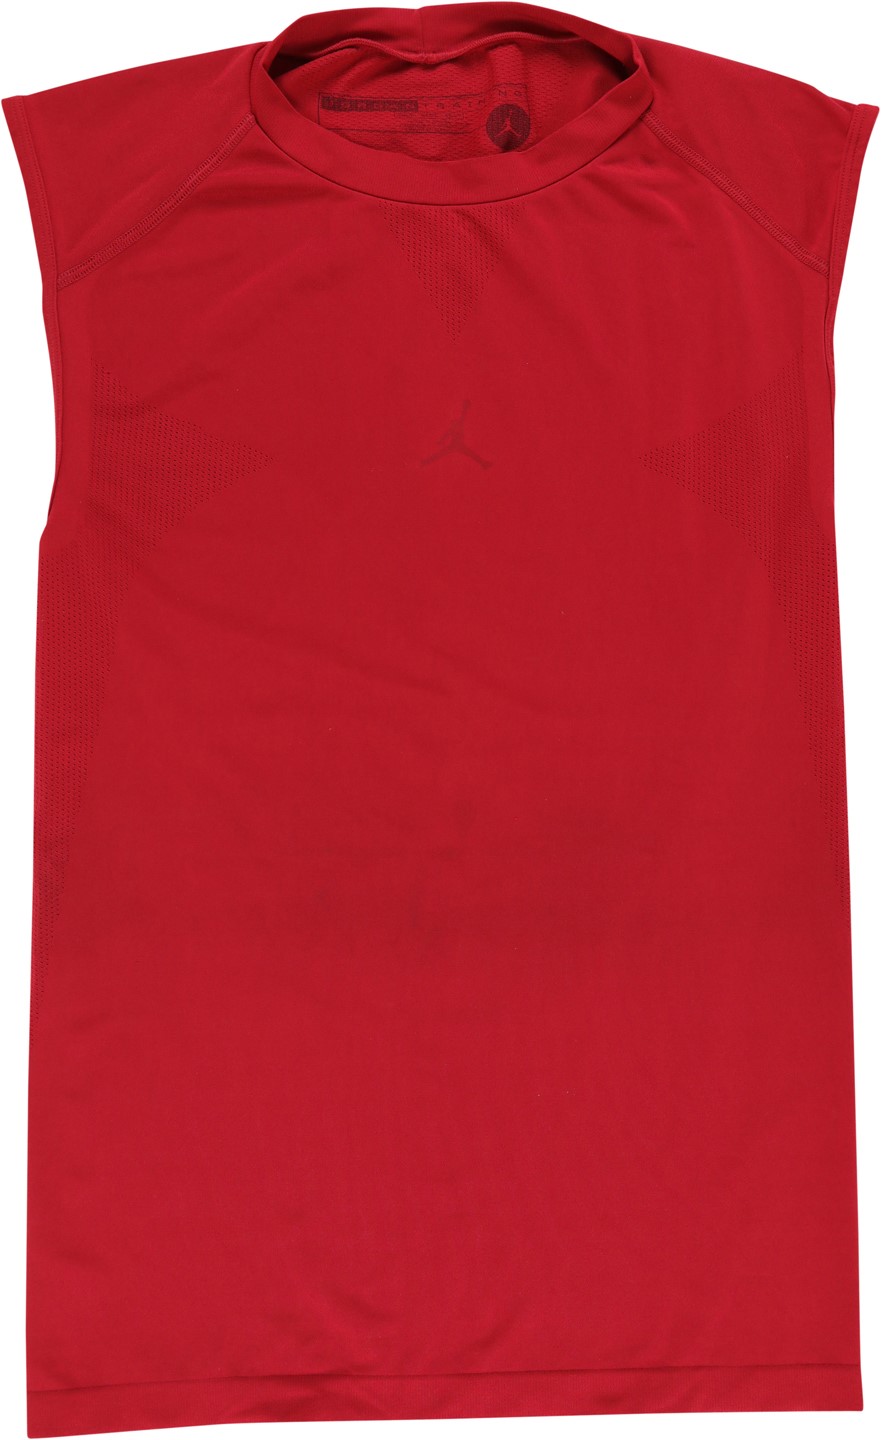 - Michael Jordan Personally Worn "Jordan" Athletic Shirt from "Last Dance" Security Guard John Michael Wozniak